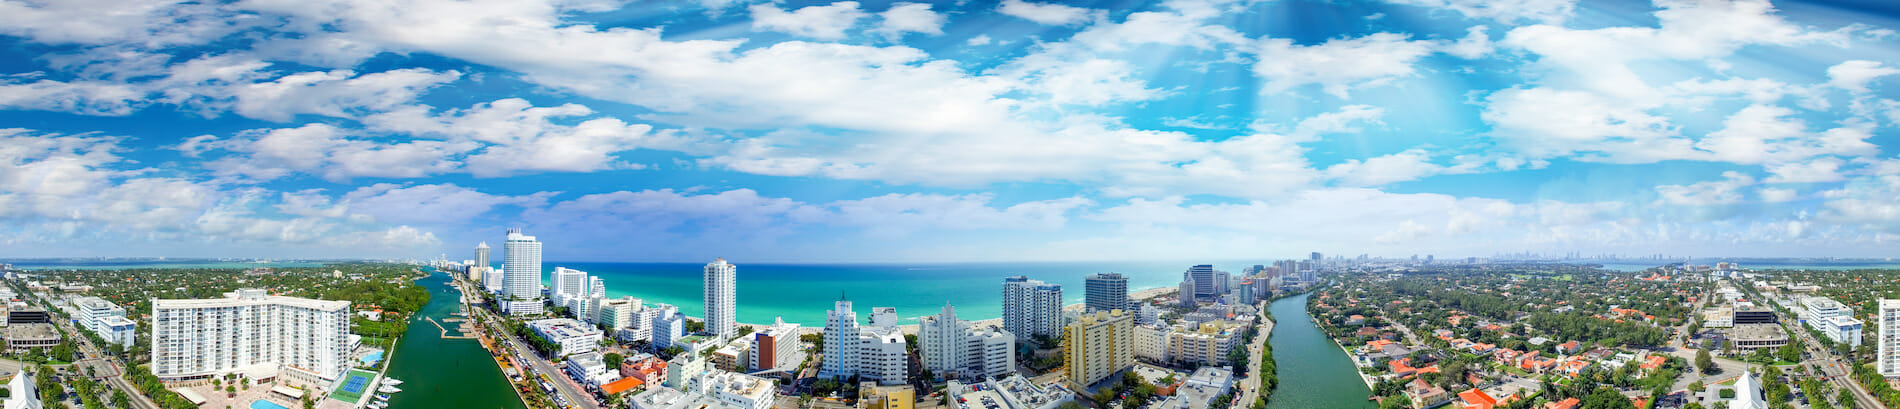 Miami Beach by adobe jovannig